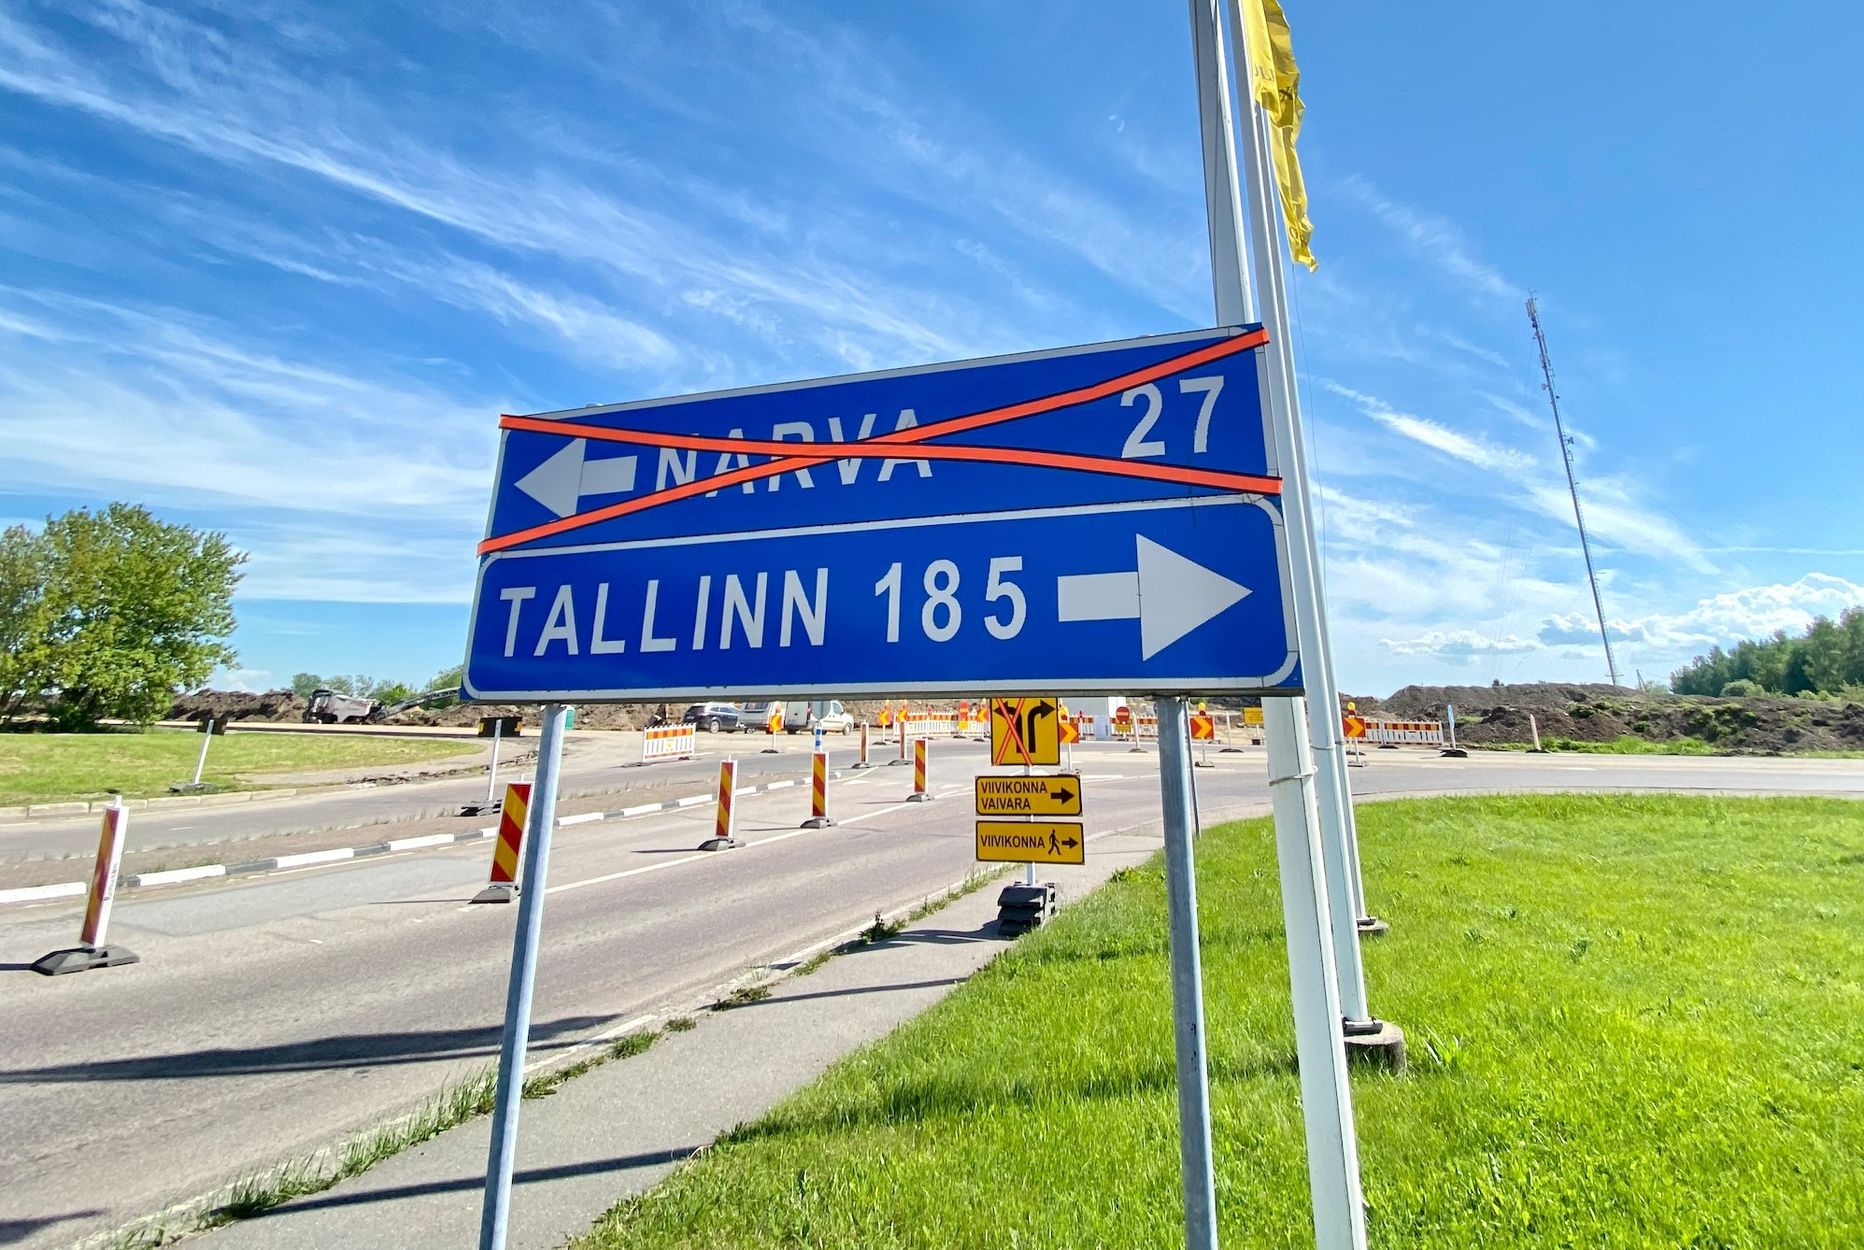 Нарва, крупнейший город Ида-Вирумаа, потеряла за последние четыре года более 5000 жителей, некоторые из них переехали в Таллинн из-за отсутствия хорошей работы. Тем не менее, в Нарве по-прежнему проживает более 53 тысяч человек и она является третьим по величине городом Эстонии.